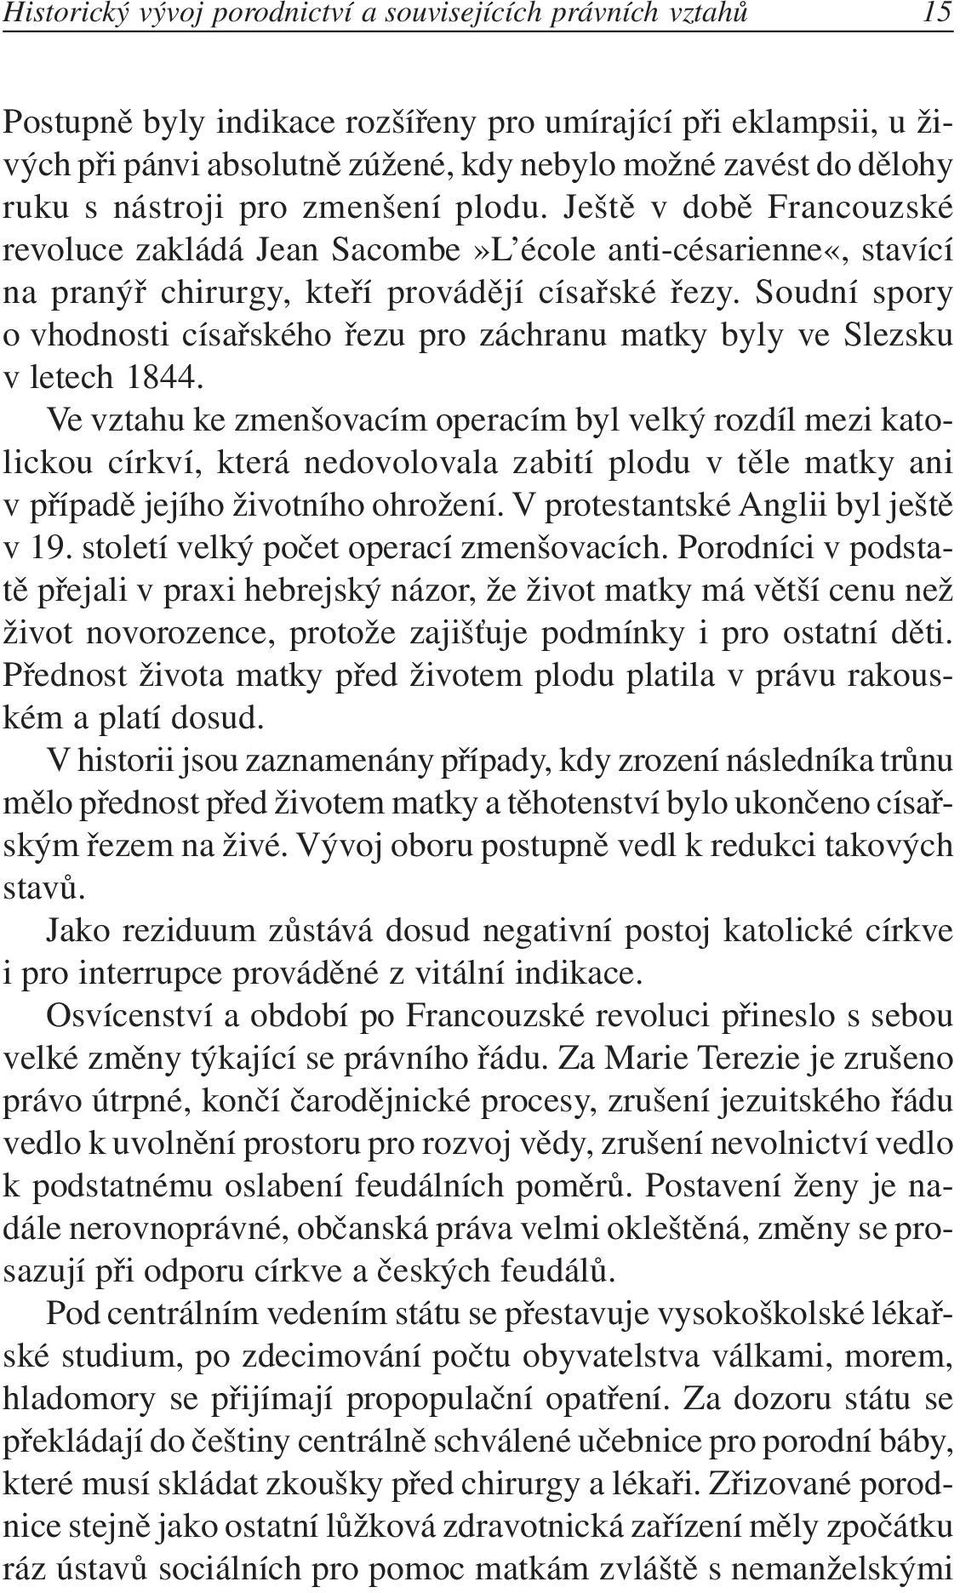 Soudní spory o vhodnosti císařského řezu pro záchranu matky byly ve Slezsku v letech 1844.